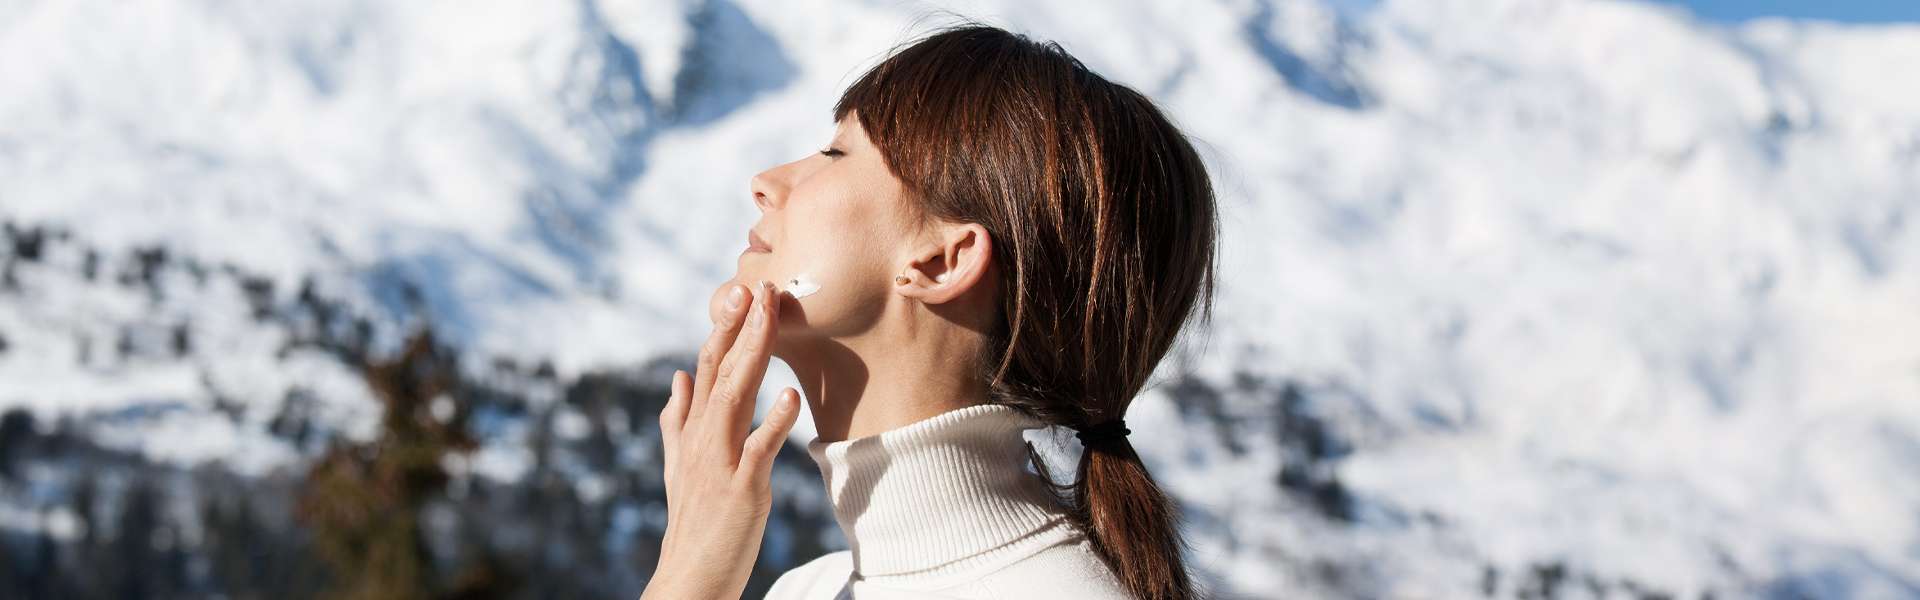 Proteger la piel de los rigores del invierno: cosmética y nutrición